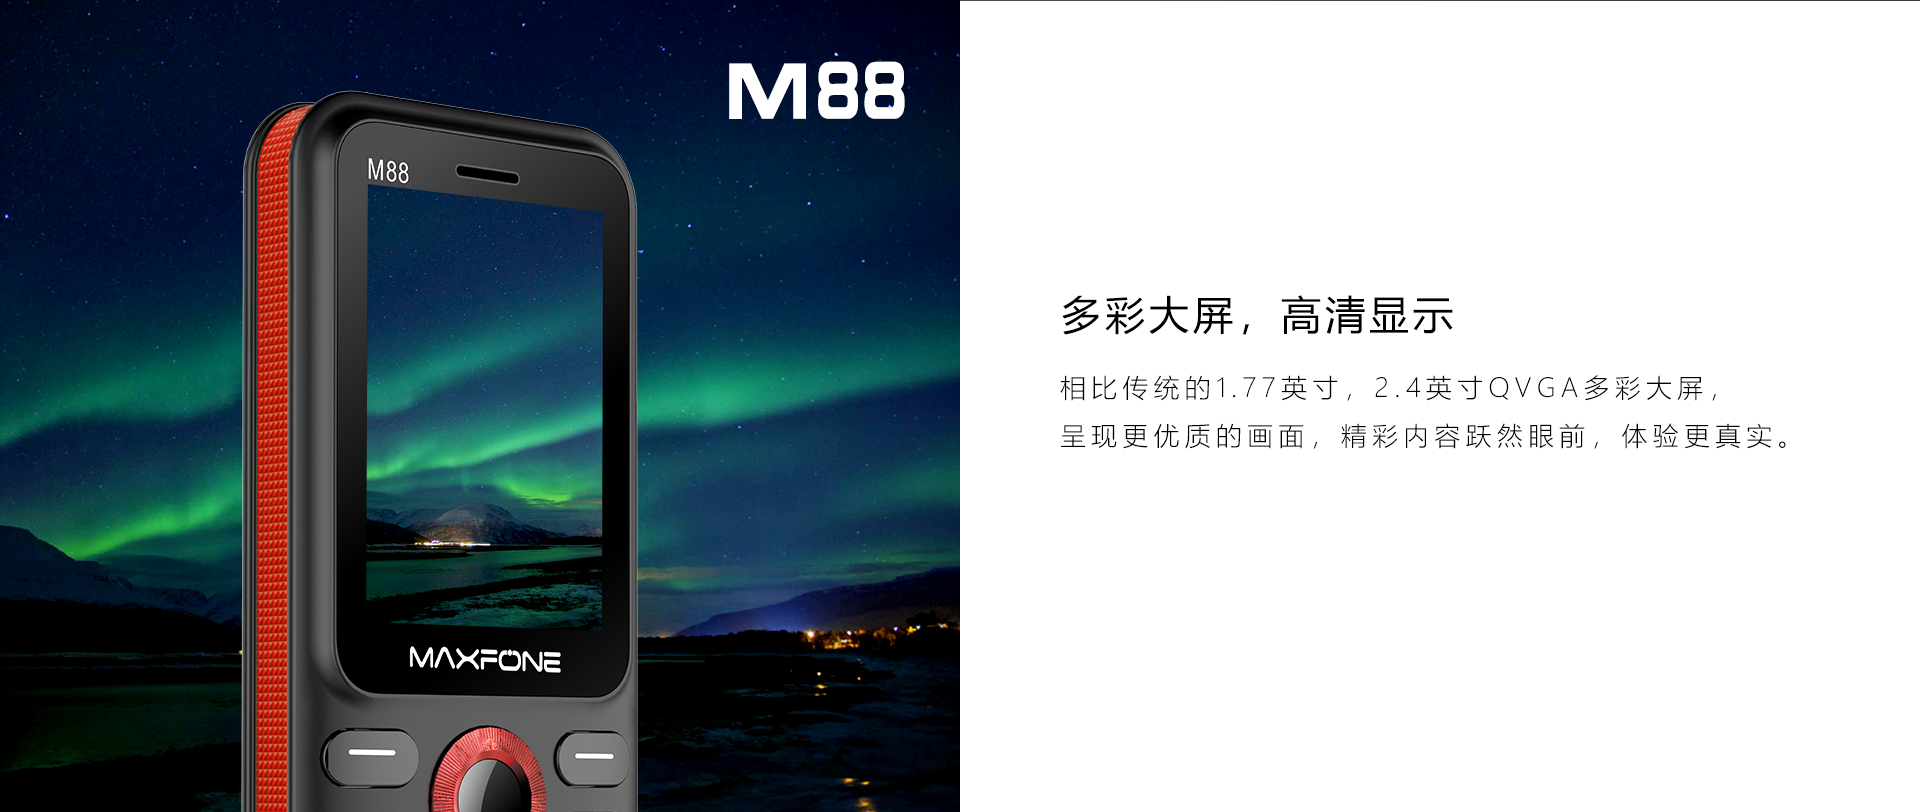 M68_M88详情页(中文版）_03